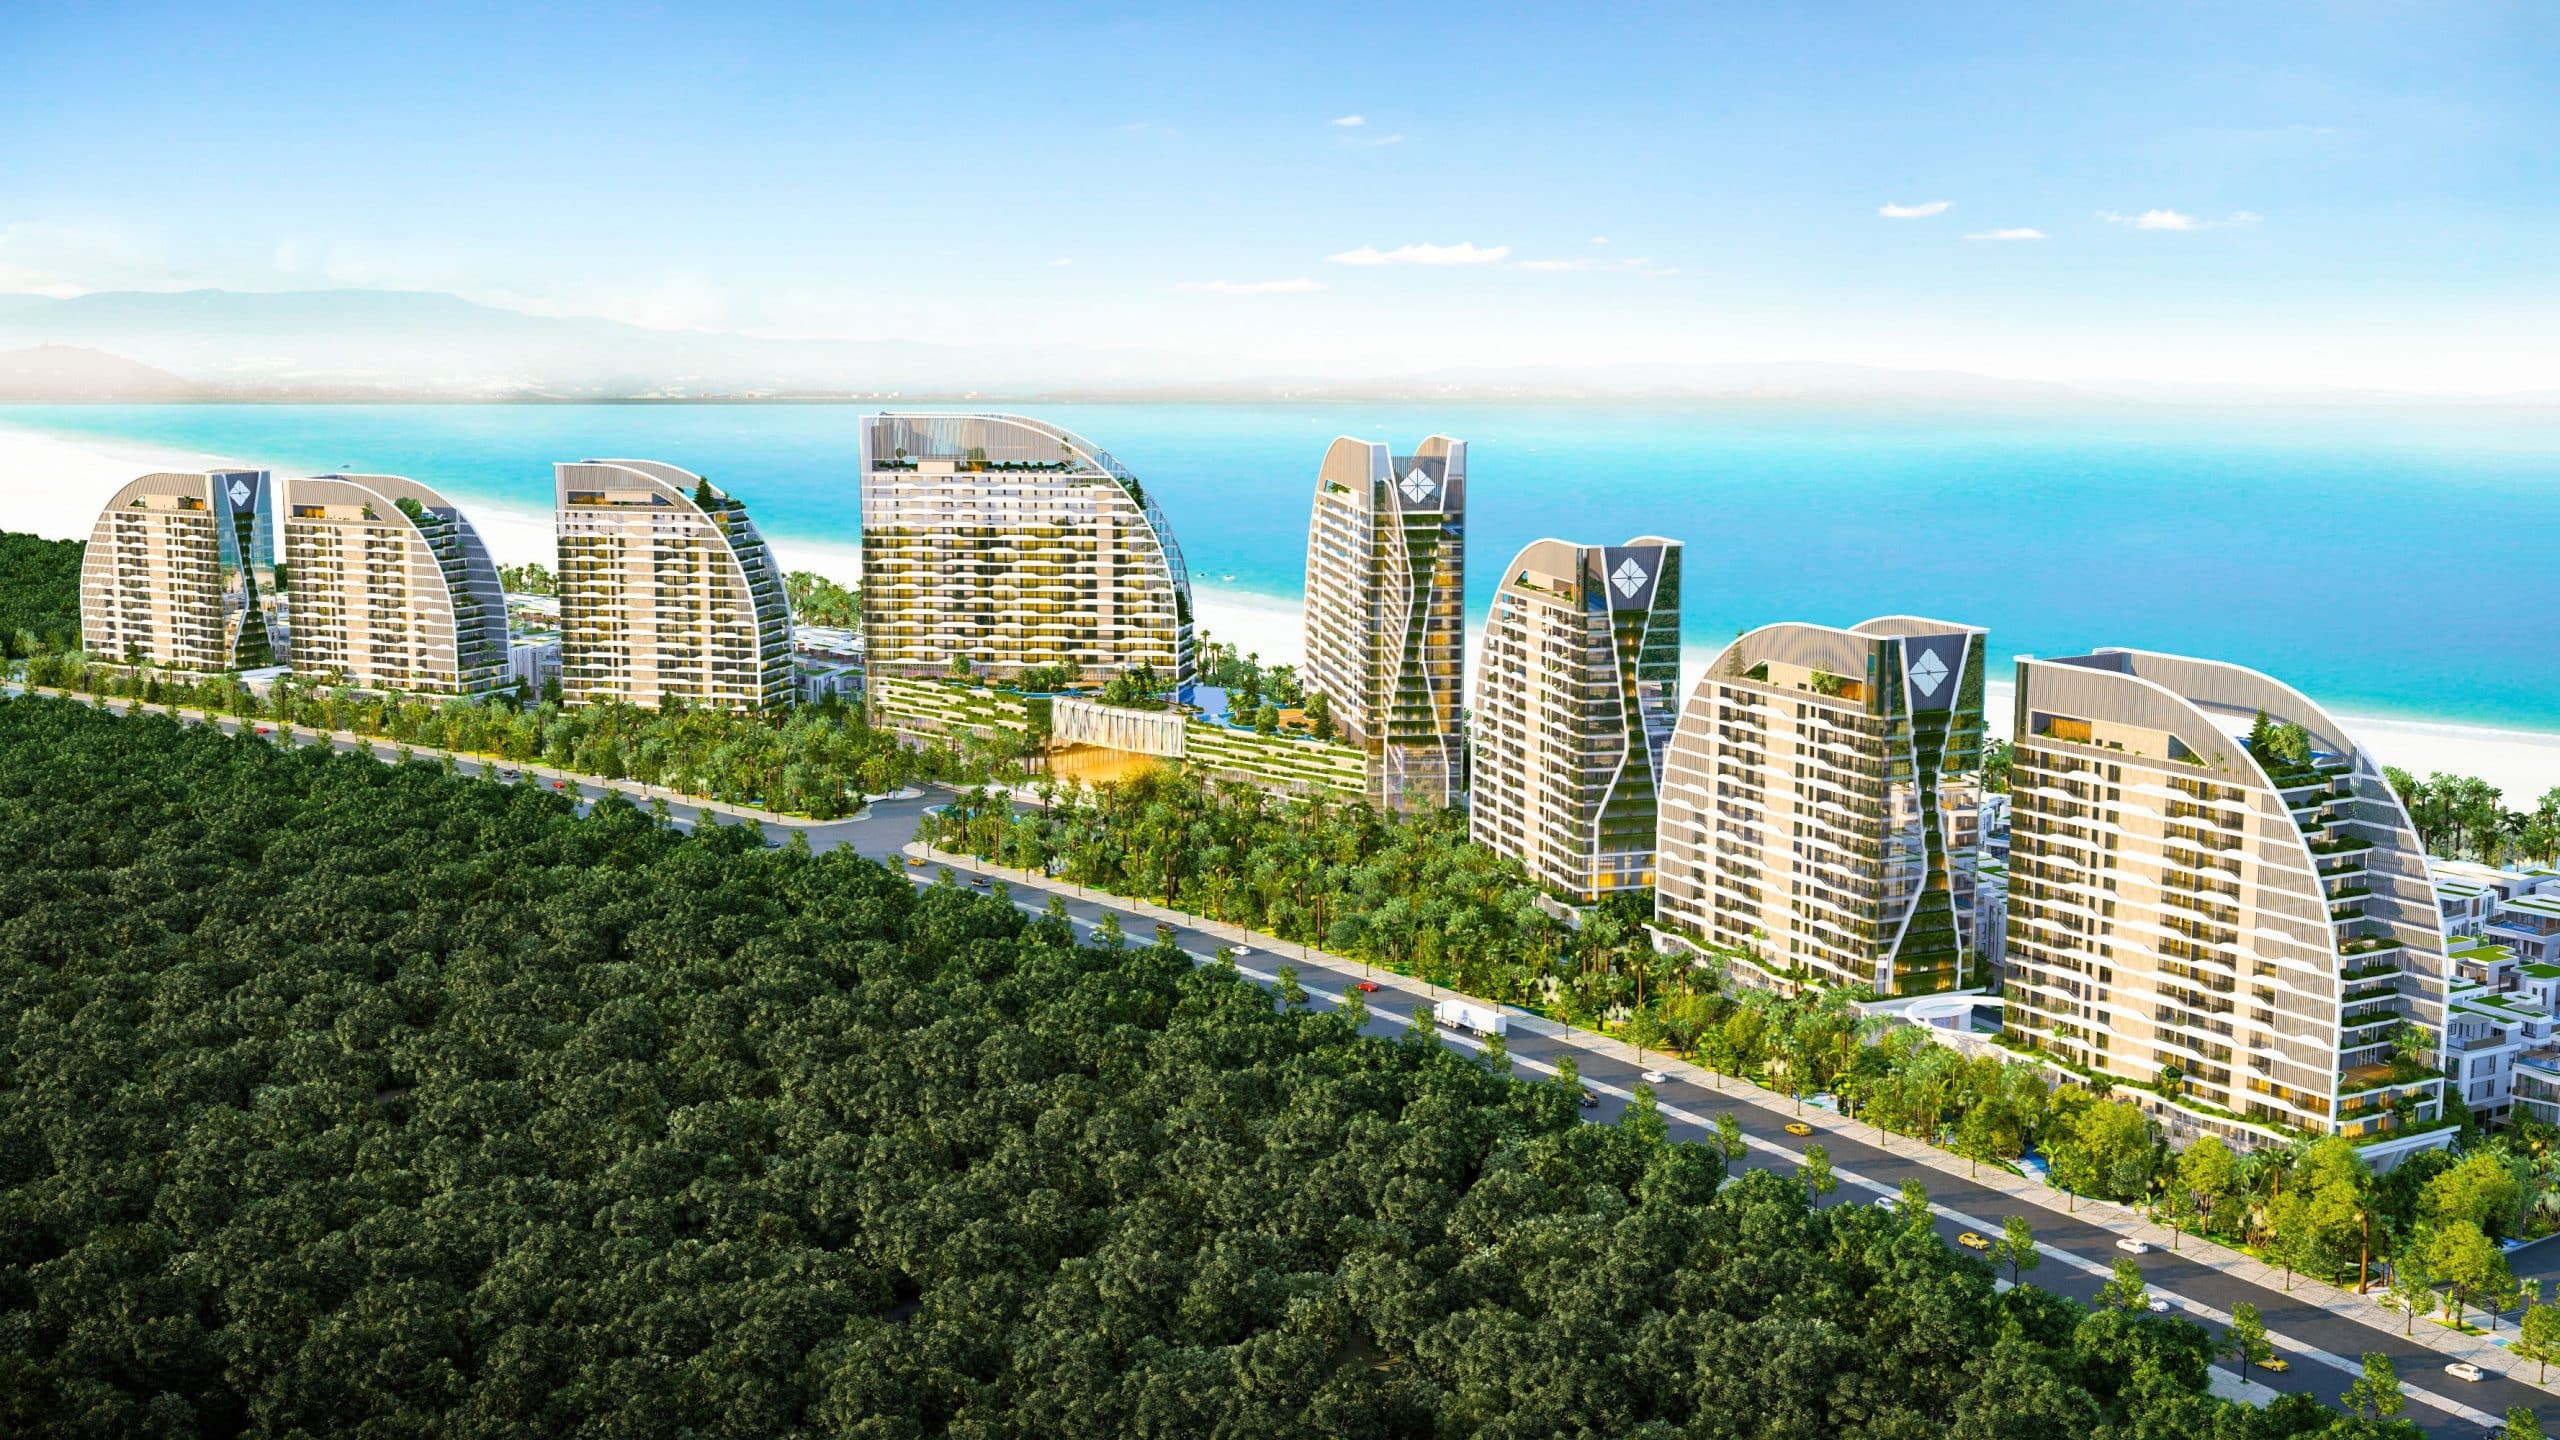 The Sea Class Hồ Tràm là phân khu thứ 2 thuộc dự án khu nghỉ dưỡng cao cấp Charm Resort Hồ Tràm. Dự án bao gồm các hai tháp căn hộ cao tầng, các nhà phố, biệt thự,..tích hợp cùng các quần thể tiện ích đạt chuẩn quốc tế 5 -6 sao.